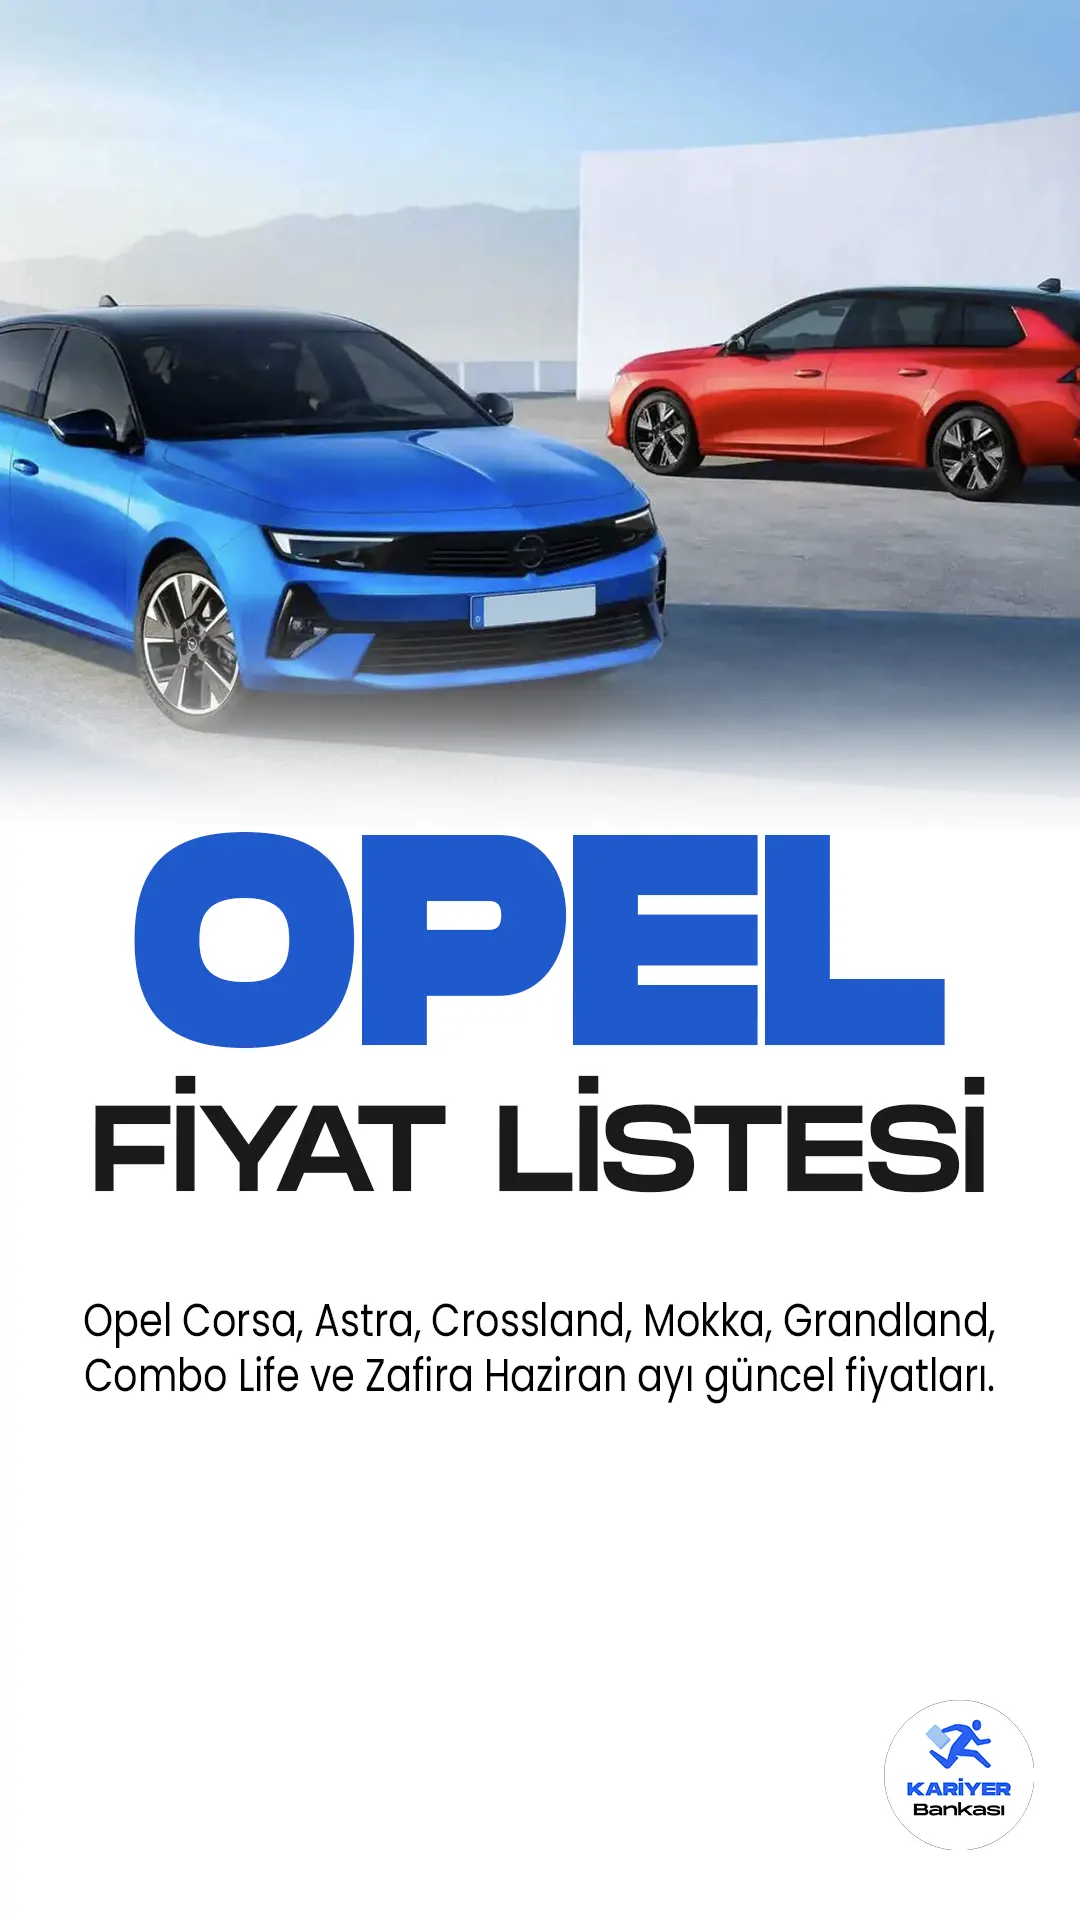 Opel Haziran 2023 Fiyat Listesi Yayımlandı!Opel'in geniş ürün yelpazesinde yer alan modellerden Corsa, Astra, Crossland, Mokka, Grandland, Combo Life ve Zafira, otomobil severlerin beğenisini kazanan başarılı araçlardır.